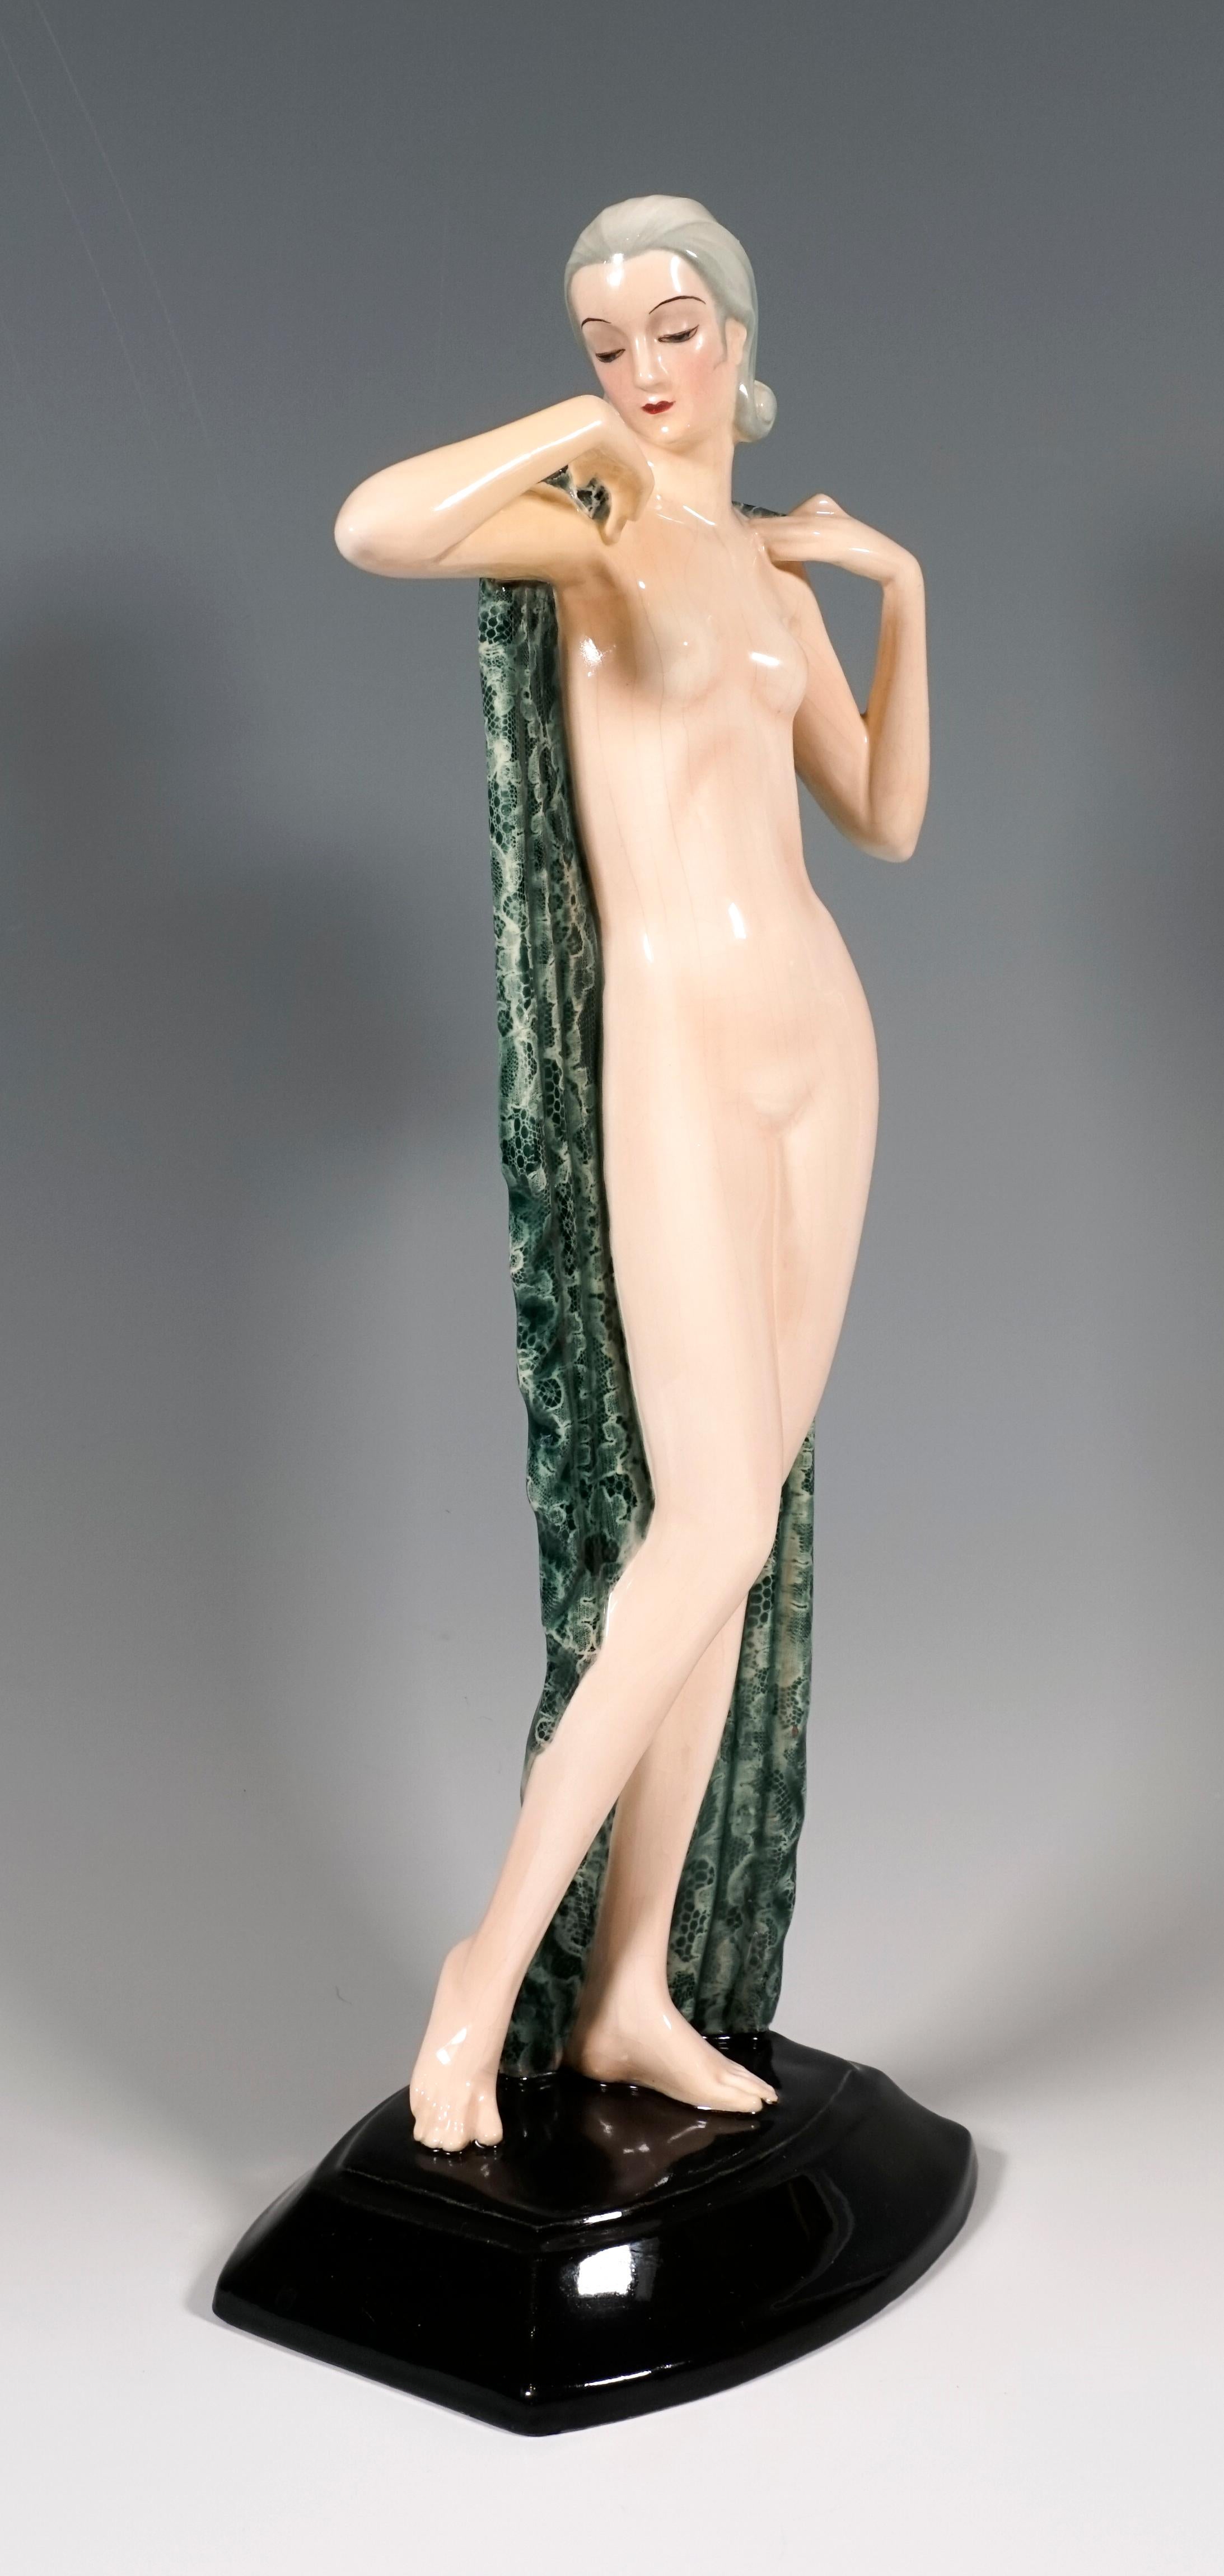 Très rare figurine en céramique Goldscheider des années 1930 :
La jolie jeune femme debout, les cheveux peignés en arrière et relevés au niveau de la nuque, couvre simplement sa nudité avec un grand tissu vert et blanc qu'elle tient derrière elle et